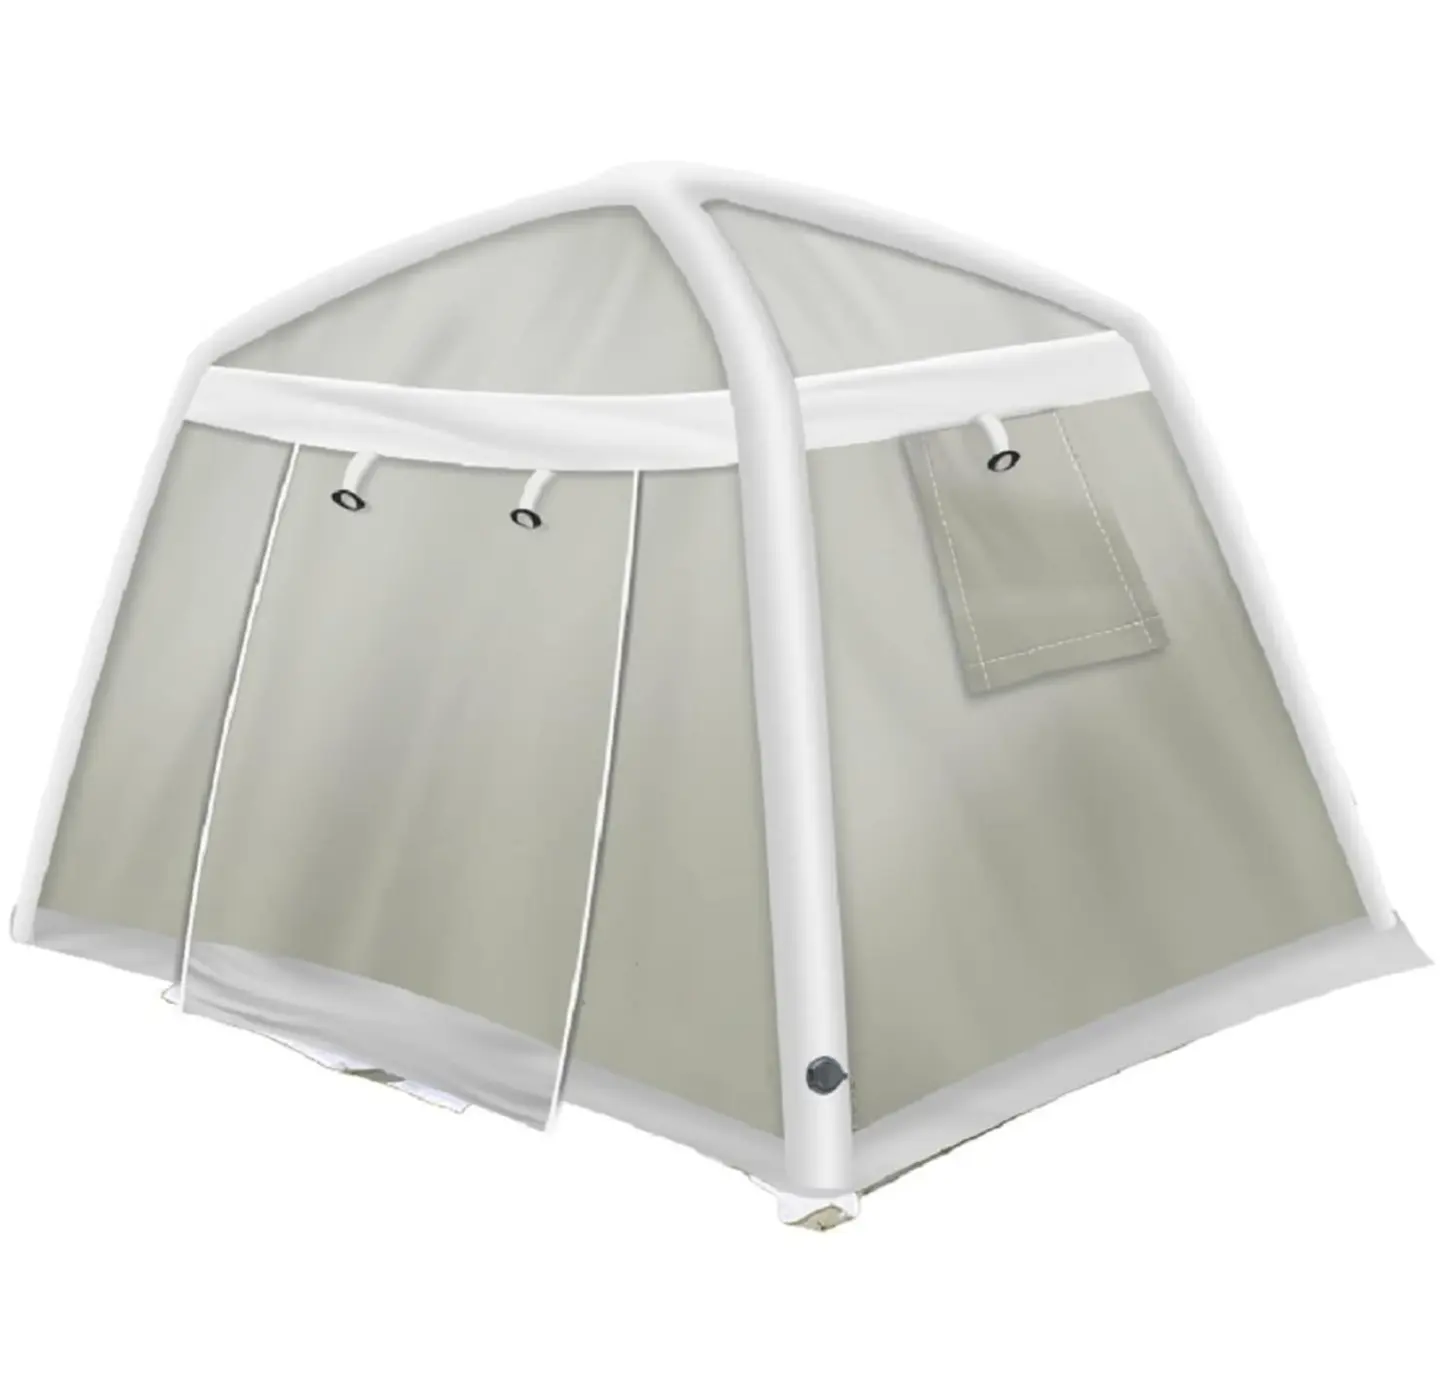 Nuova tendenza HITU miglior prezzo 4-6 persone grande tenda pneumatica impermeabile all'aperto prato gonfiabile tenda da campeggio araba in vendita